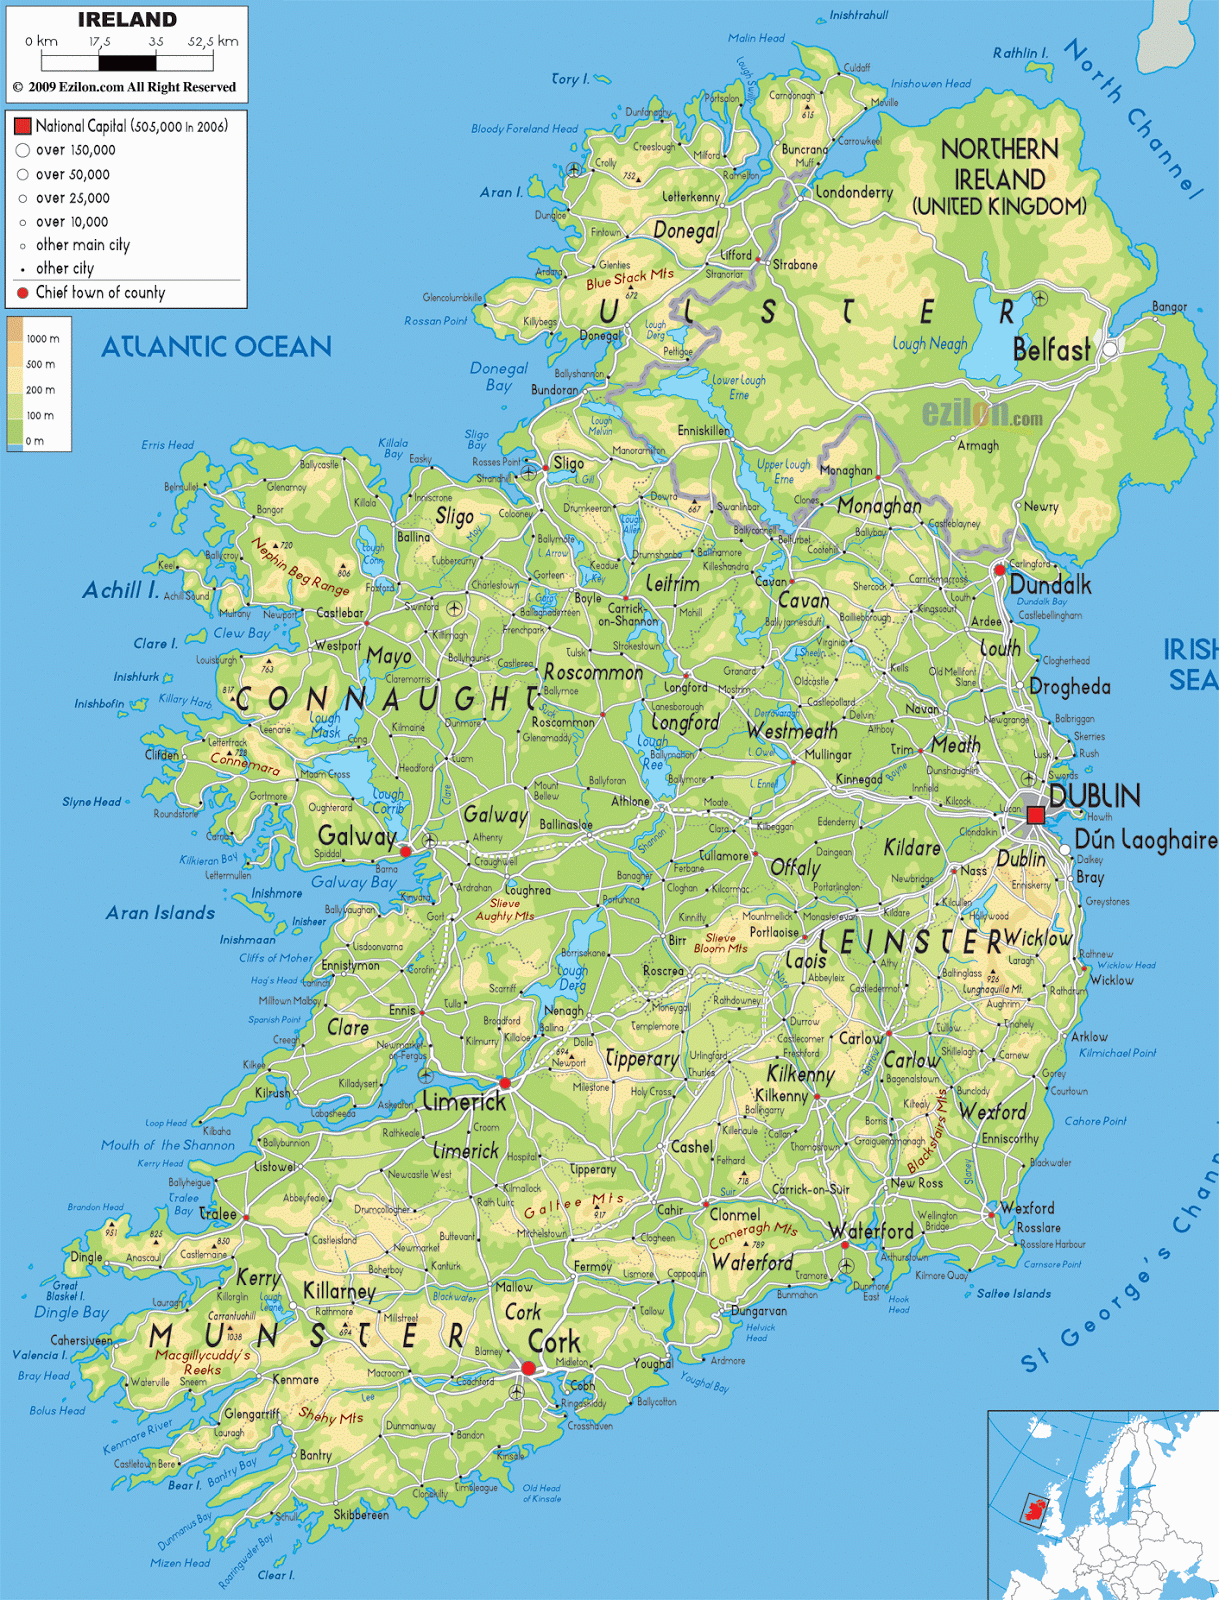 IRELAND - GEOGRAPHICAL MAPS OF IRELAND